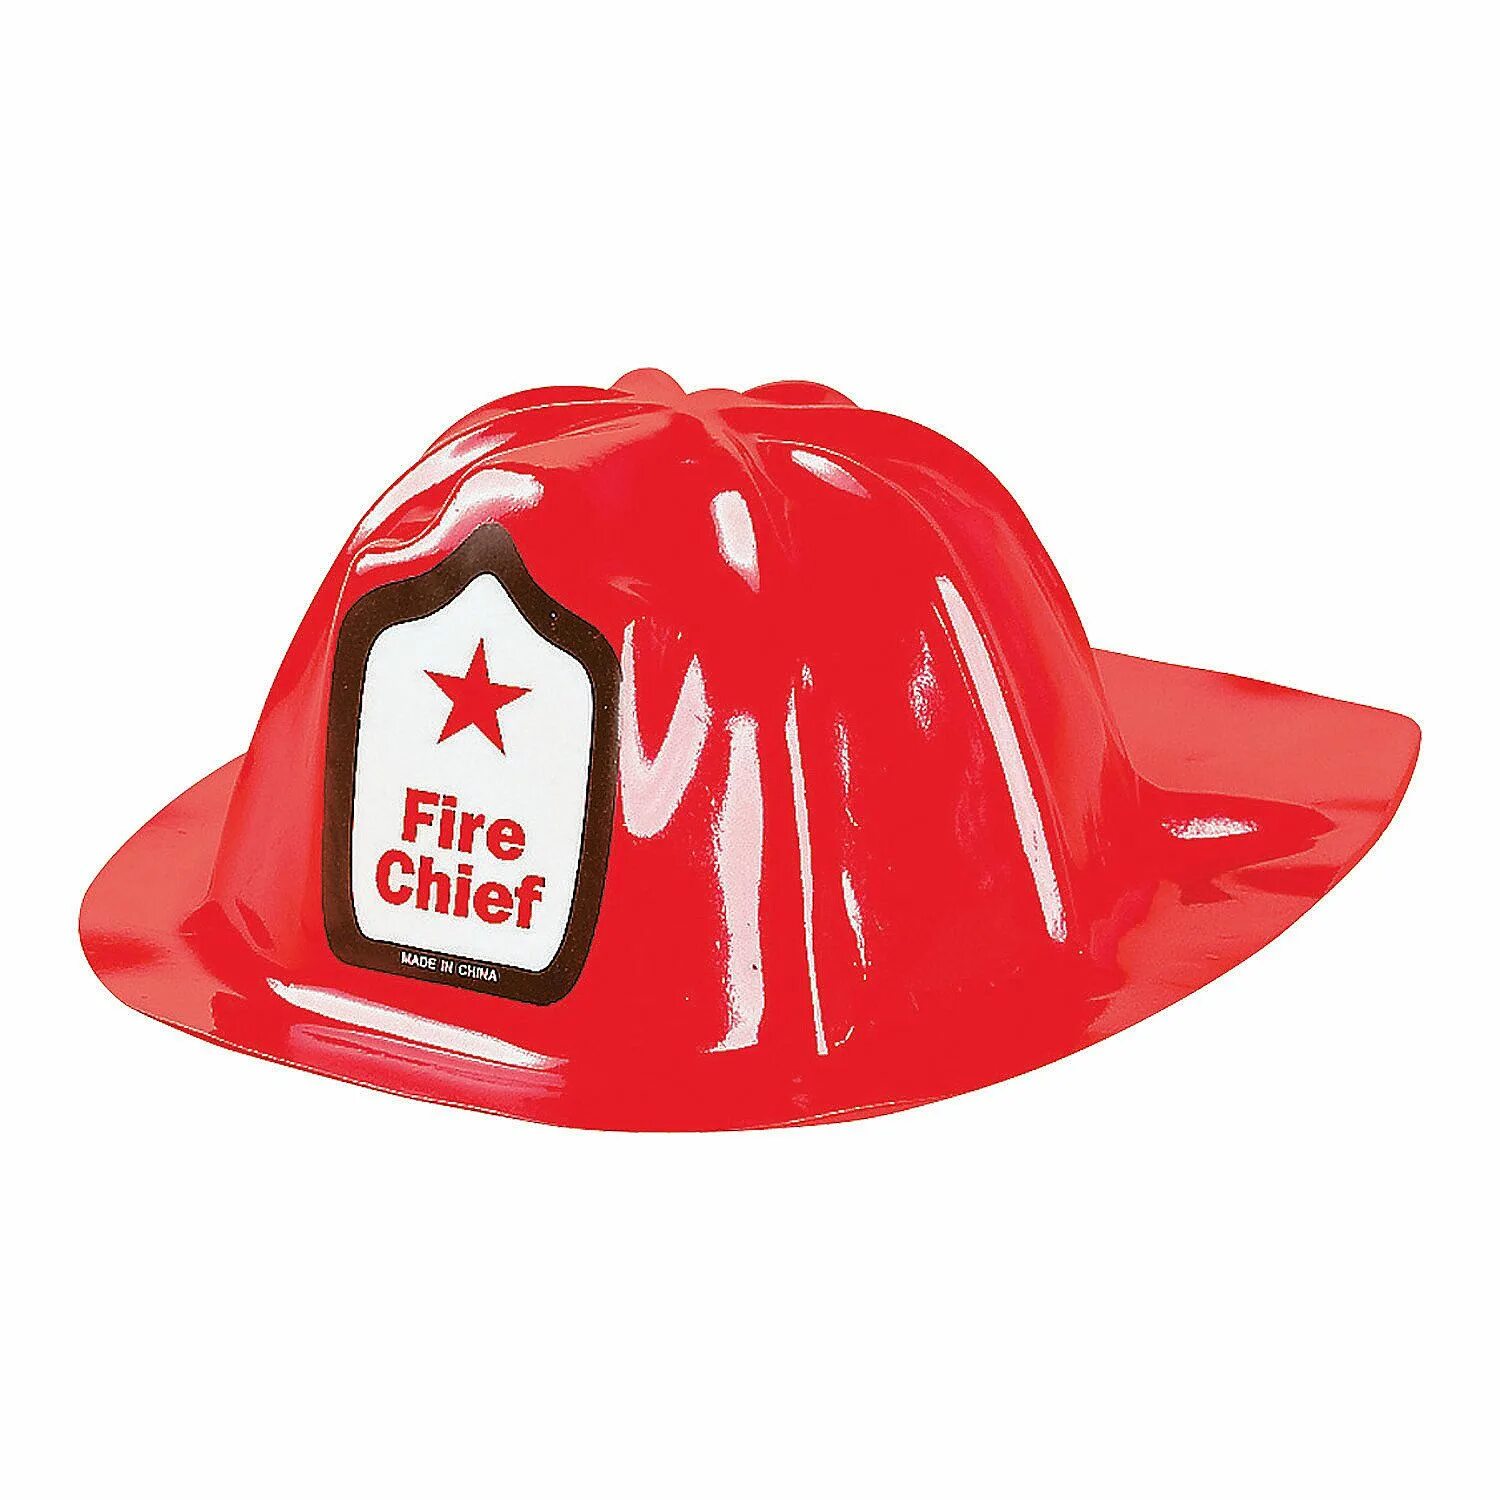 Каска в форме шляпы. Каска пожарного. Каска пожарника. Каска пожарного для детей. Шляпа пожарного.